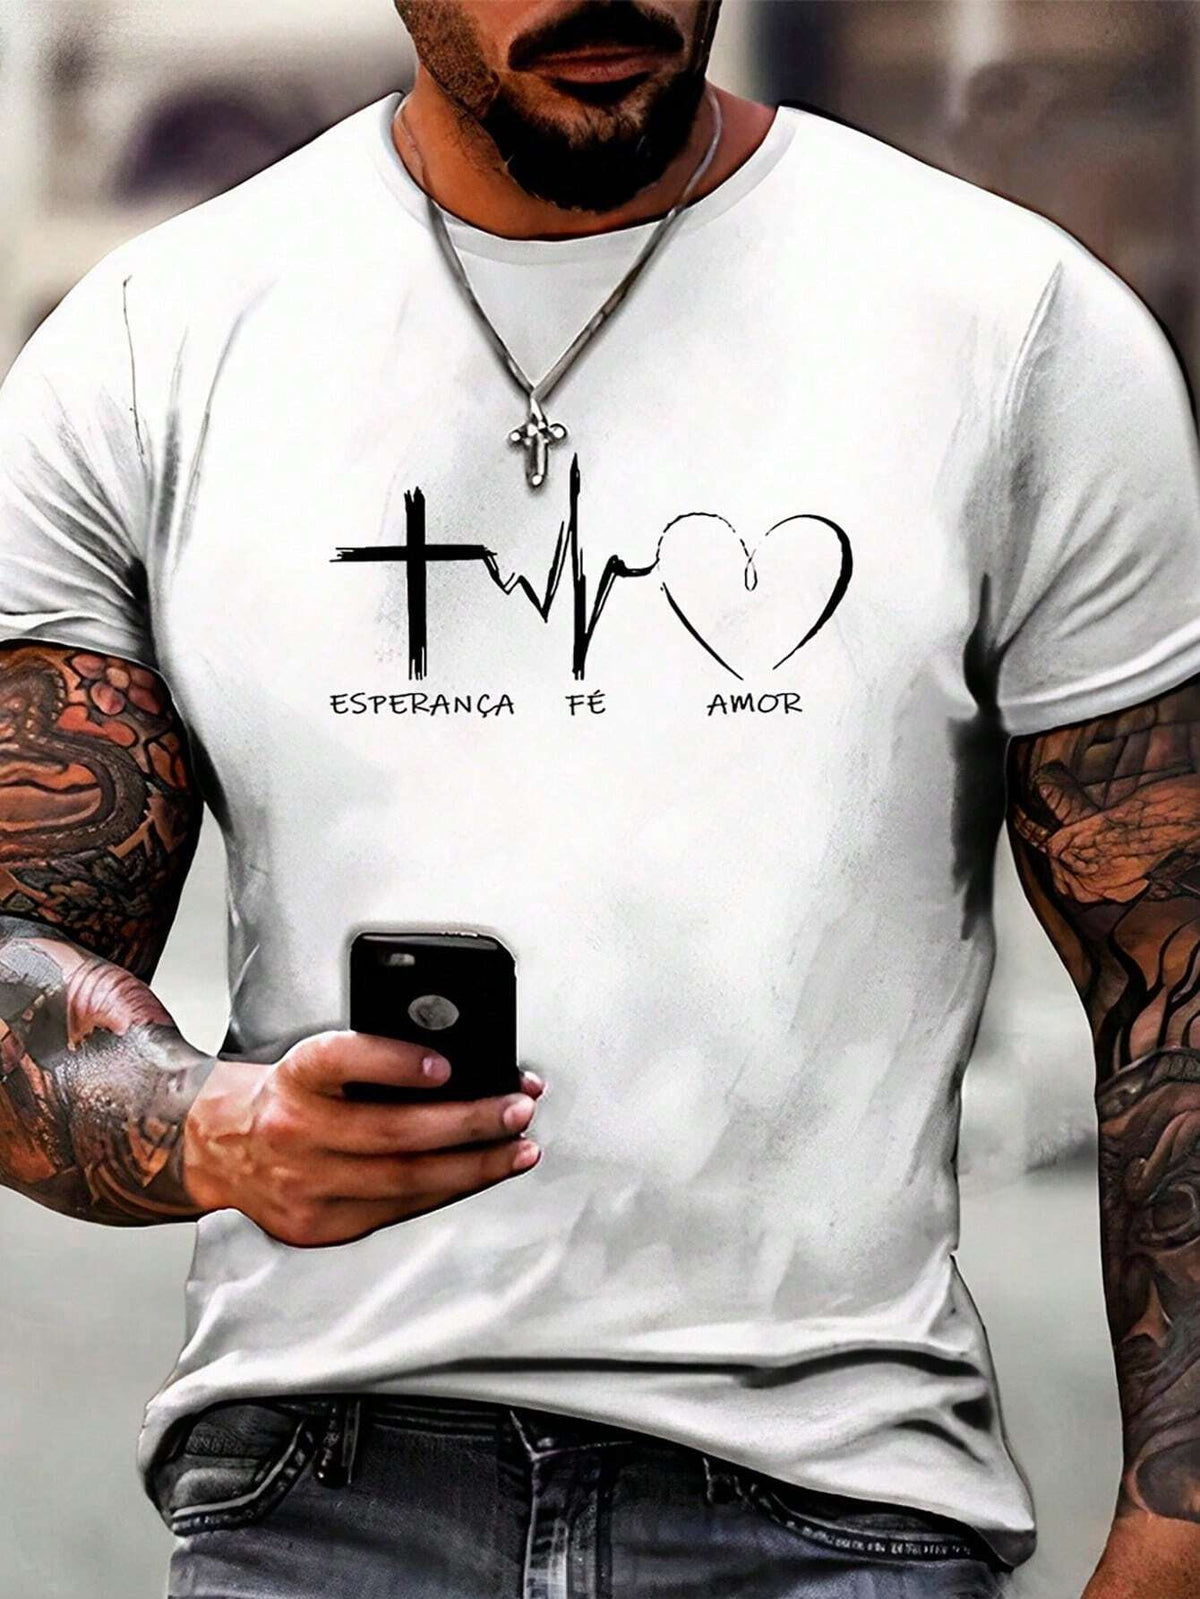 Camiseta Masculina "Fé, Esperança, Amor" - Camisa Básica Cristã Evangélica - Kaype Store